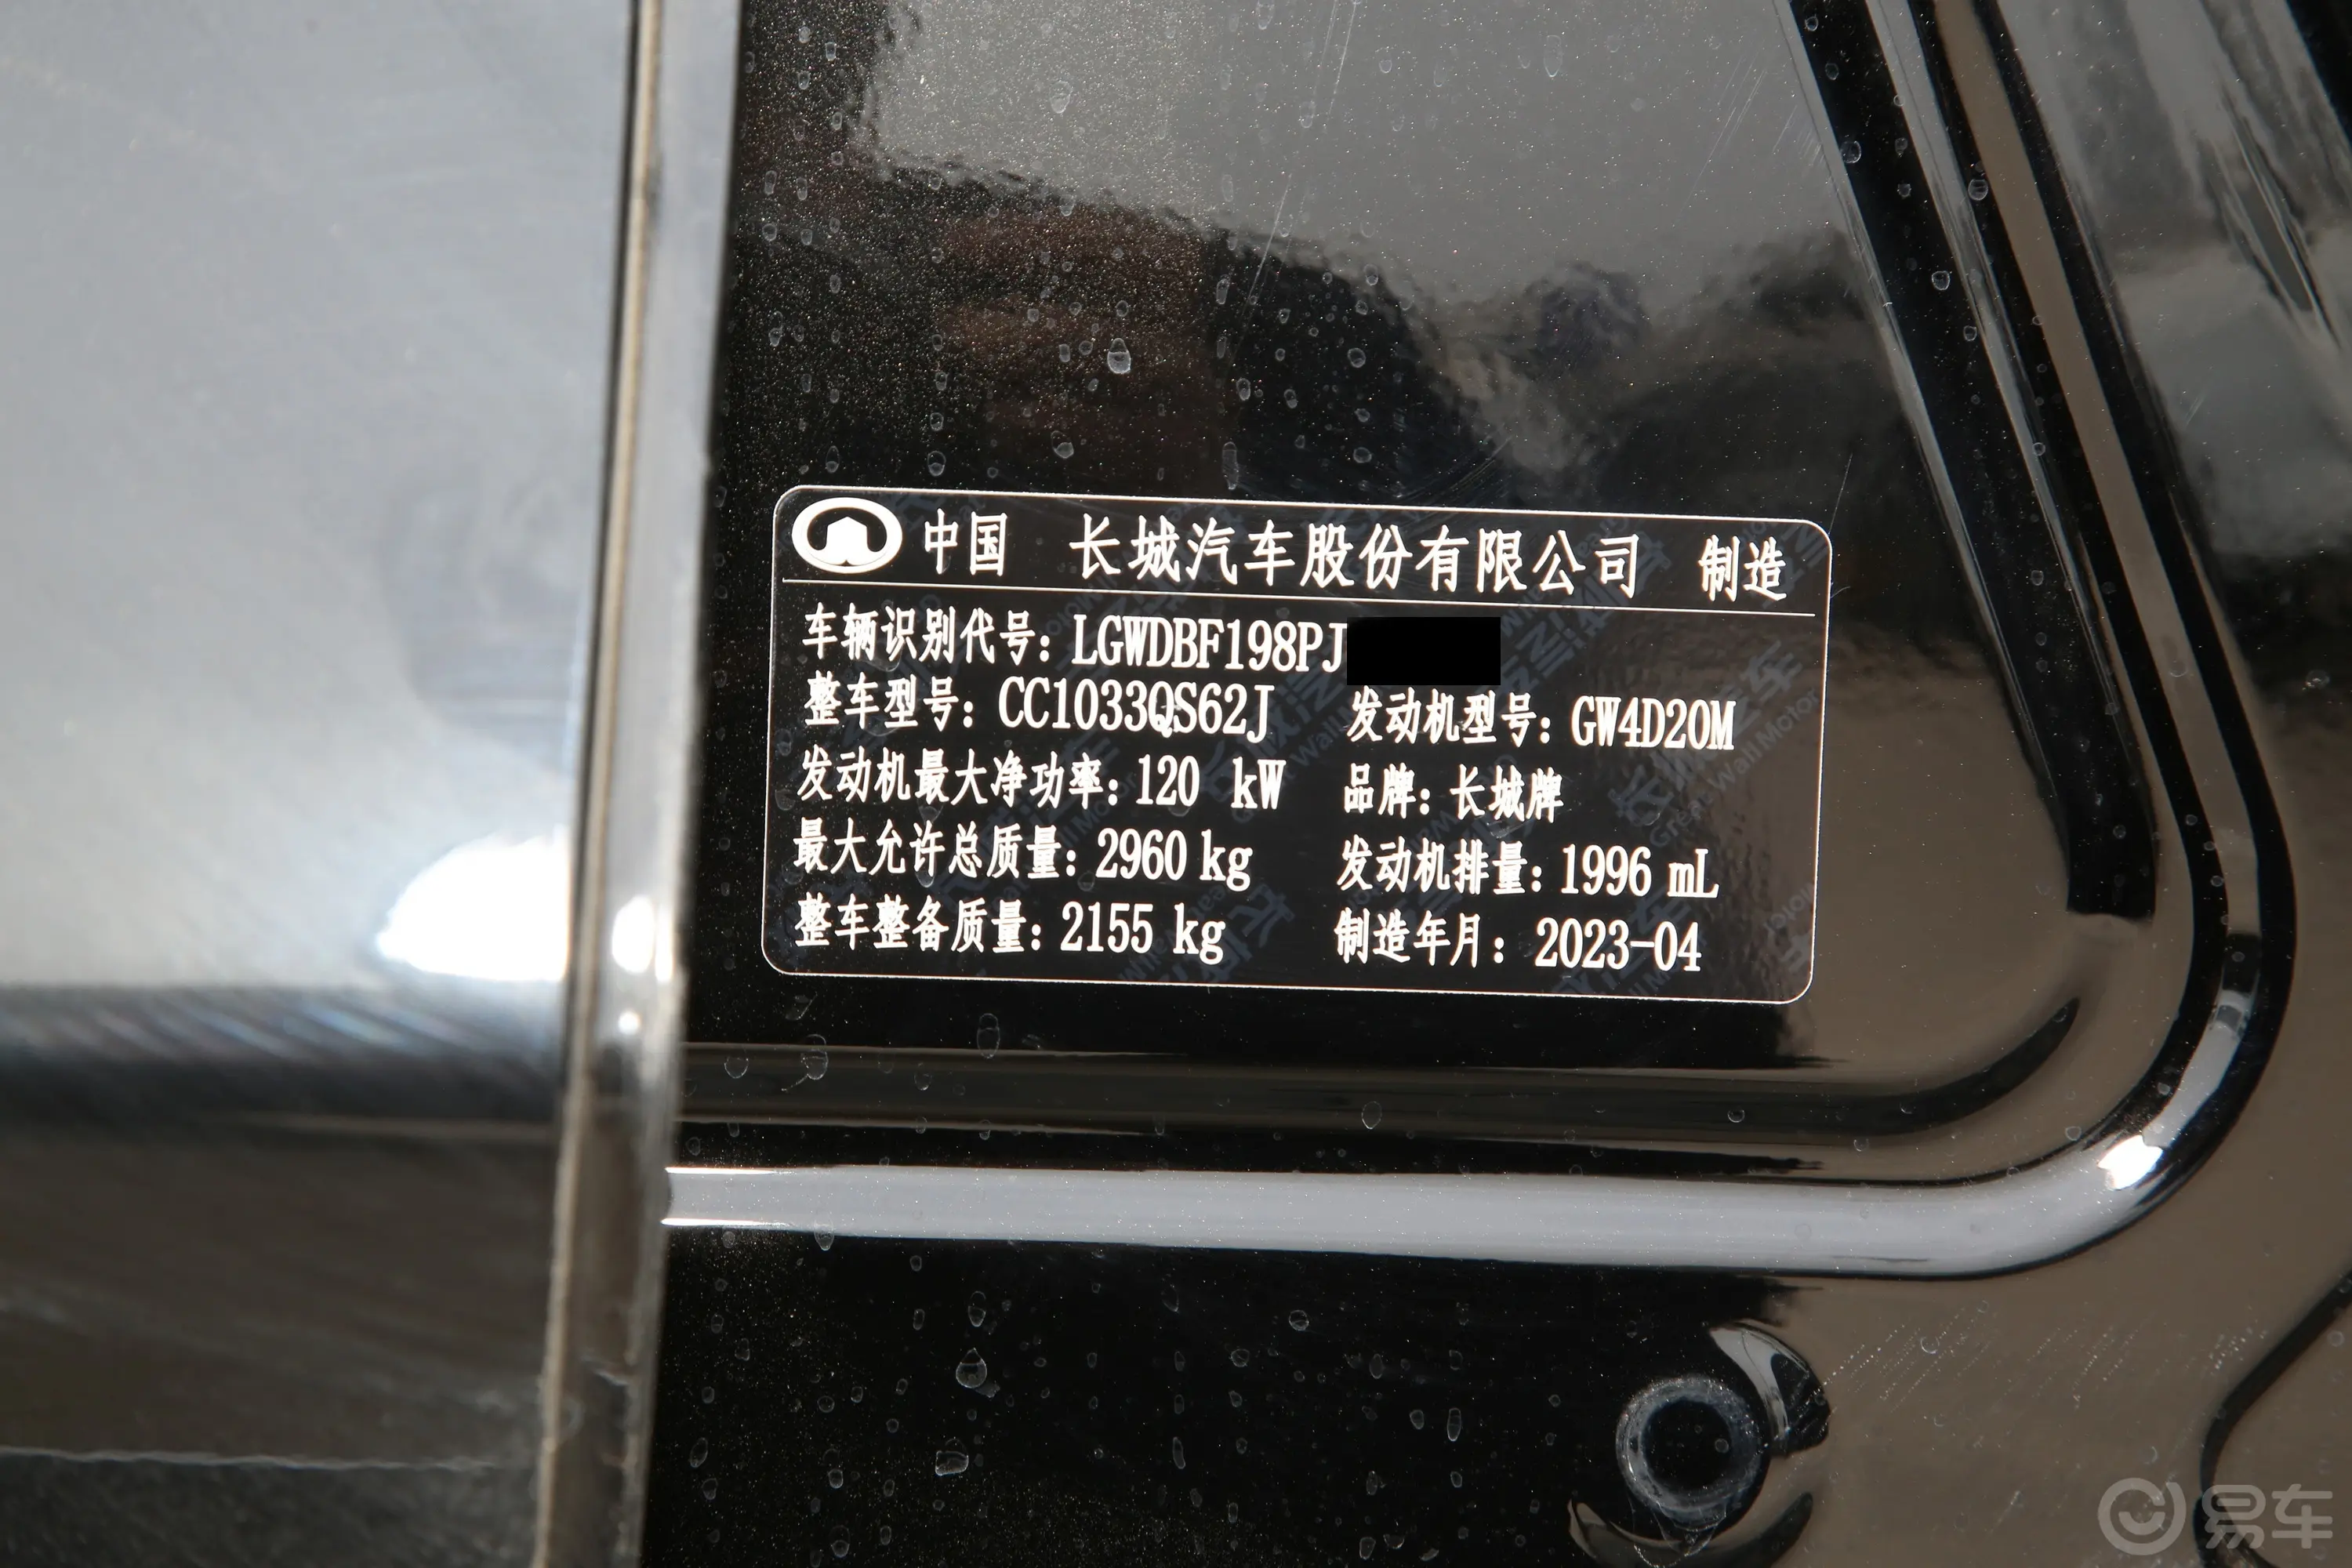 炮乘用版 2.0T 自动四驱小双舒适型 柴油车辆信息铭牌